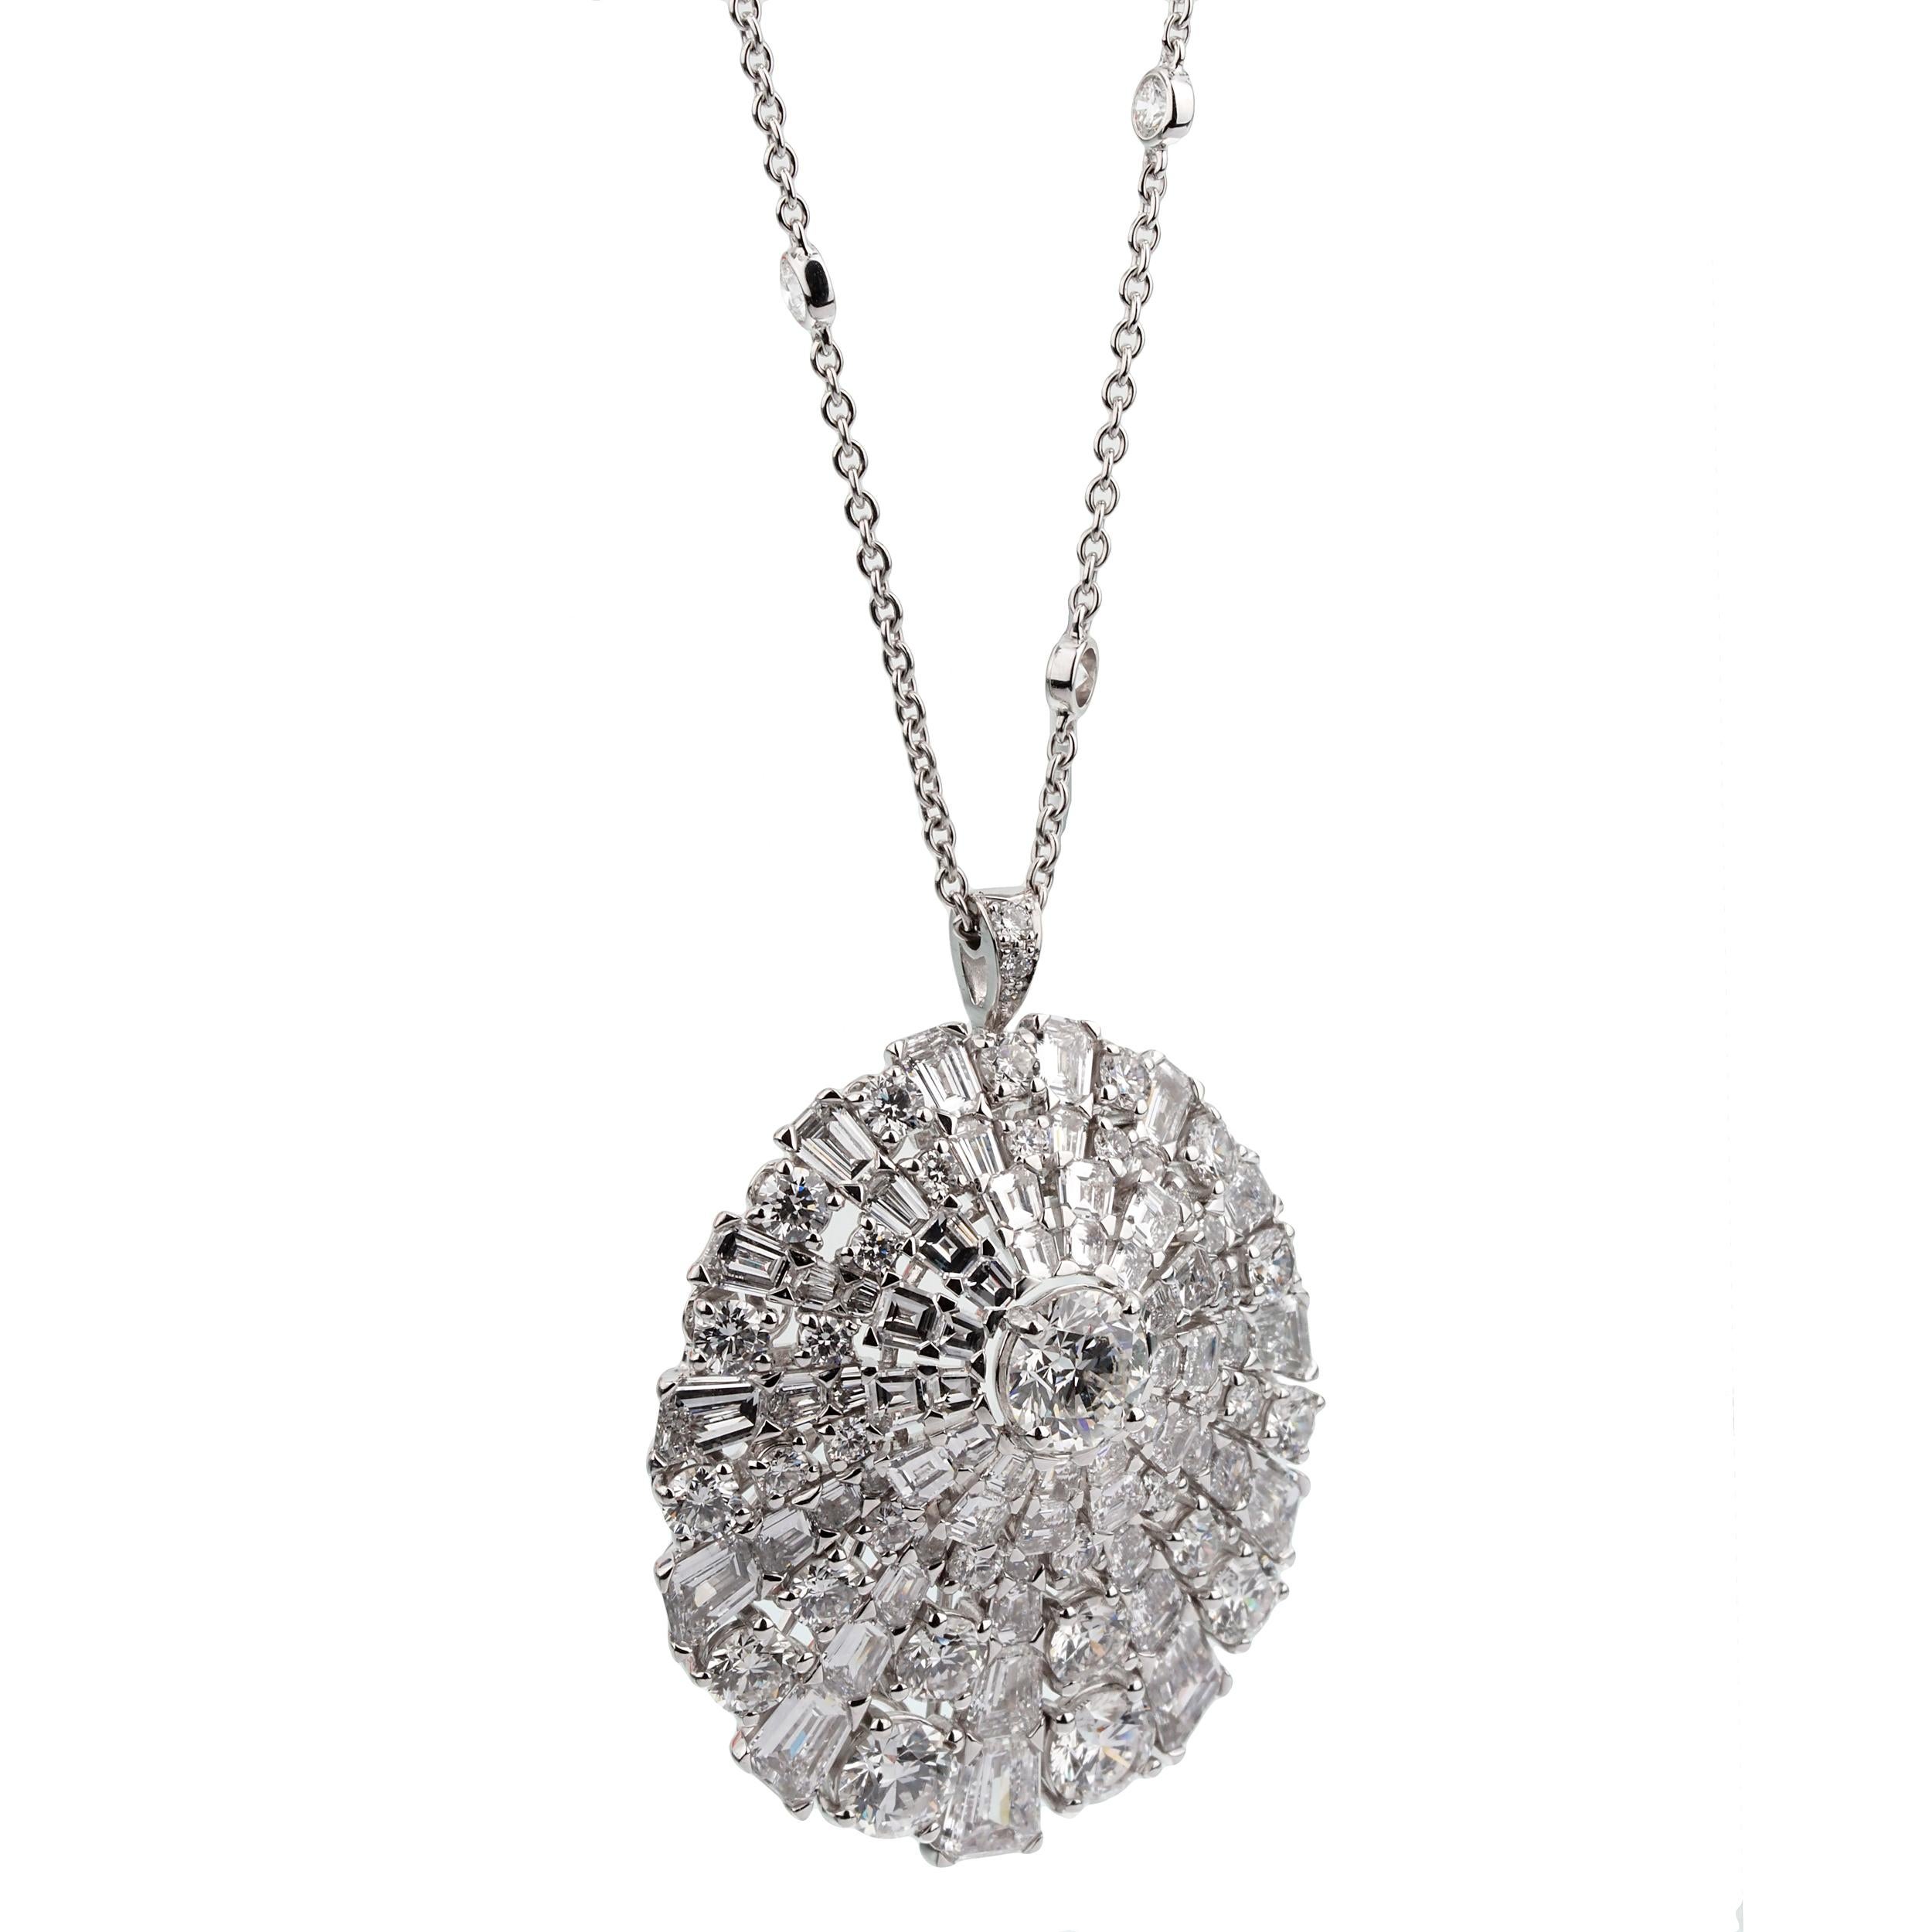 Un incroyable collier de diamants Graff mettant en valeur des diamants ronds de taille brillant et des diamants baguettes en or blanc 18k. Le collier est accompagné d'un certificat GIA indiquant que le diamant rond central de taille brillant pèse